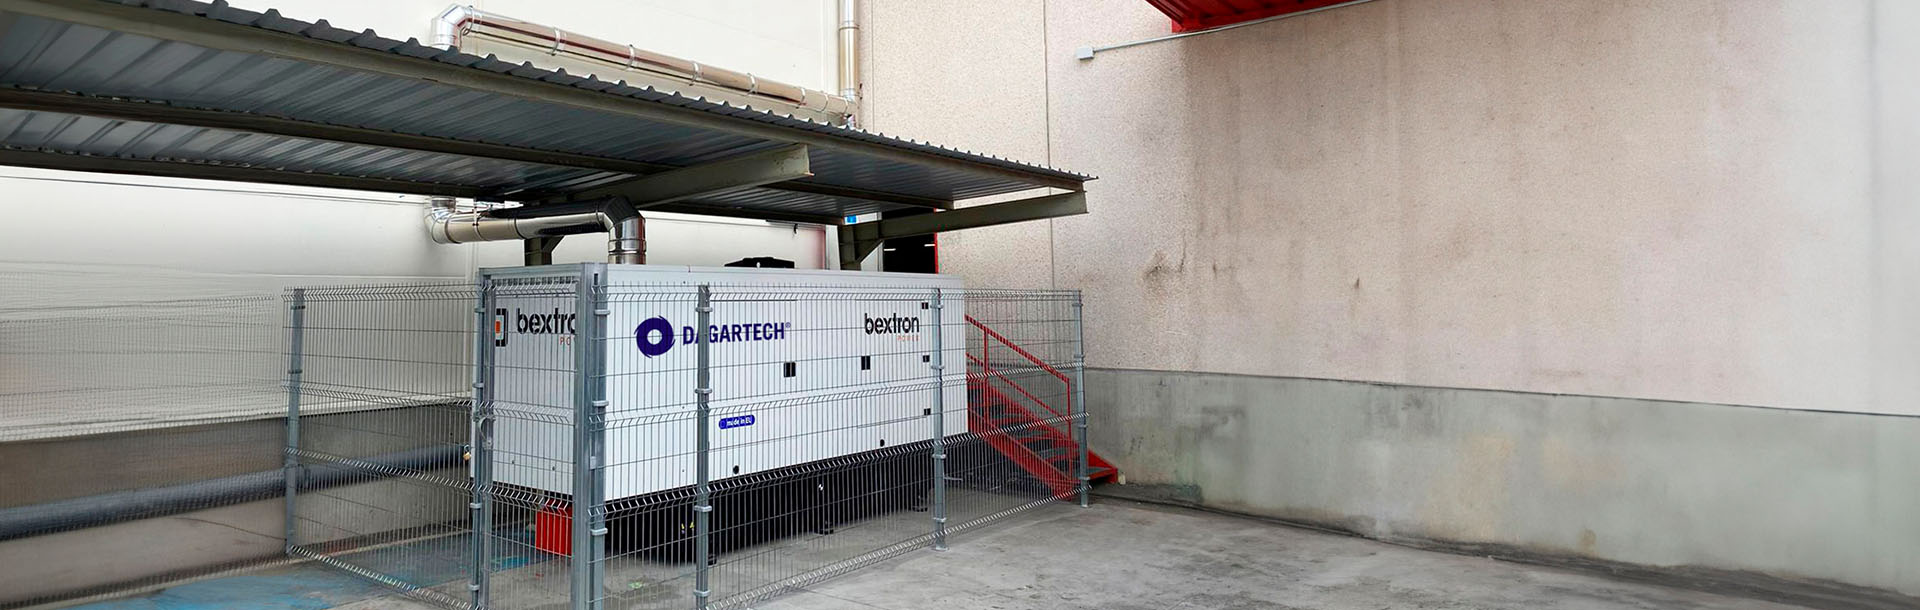 A Dagartech generator set guarantees the power supply for the Correos Express branch in Getafe